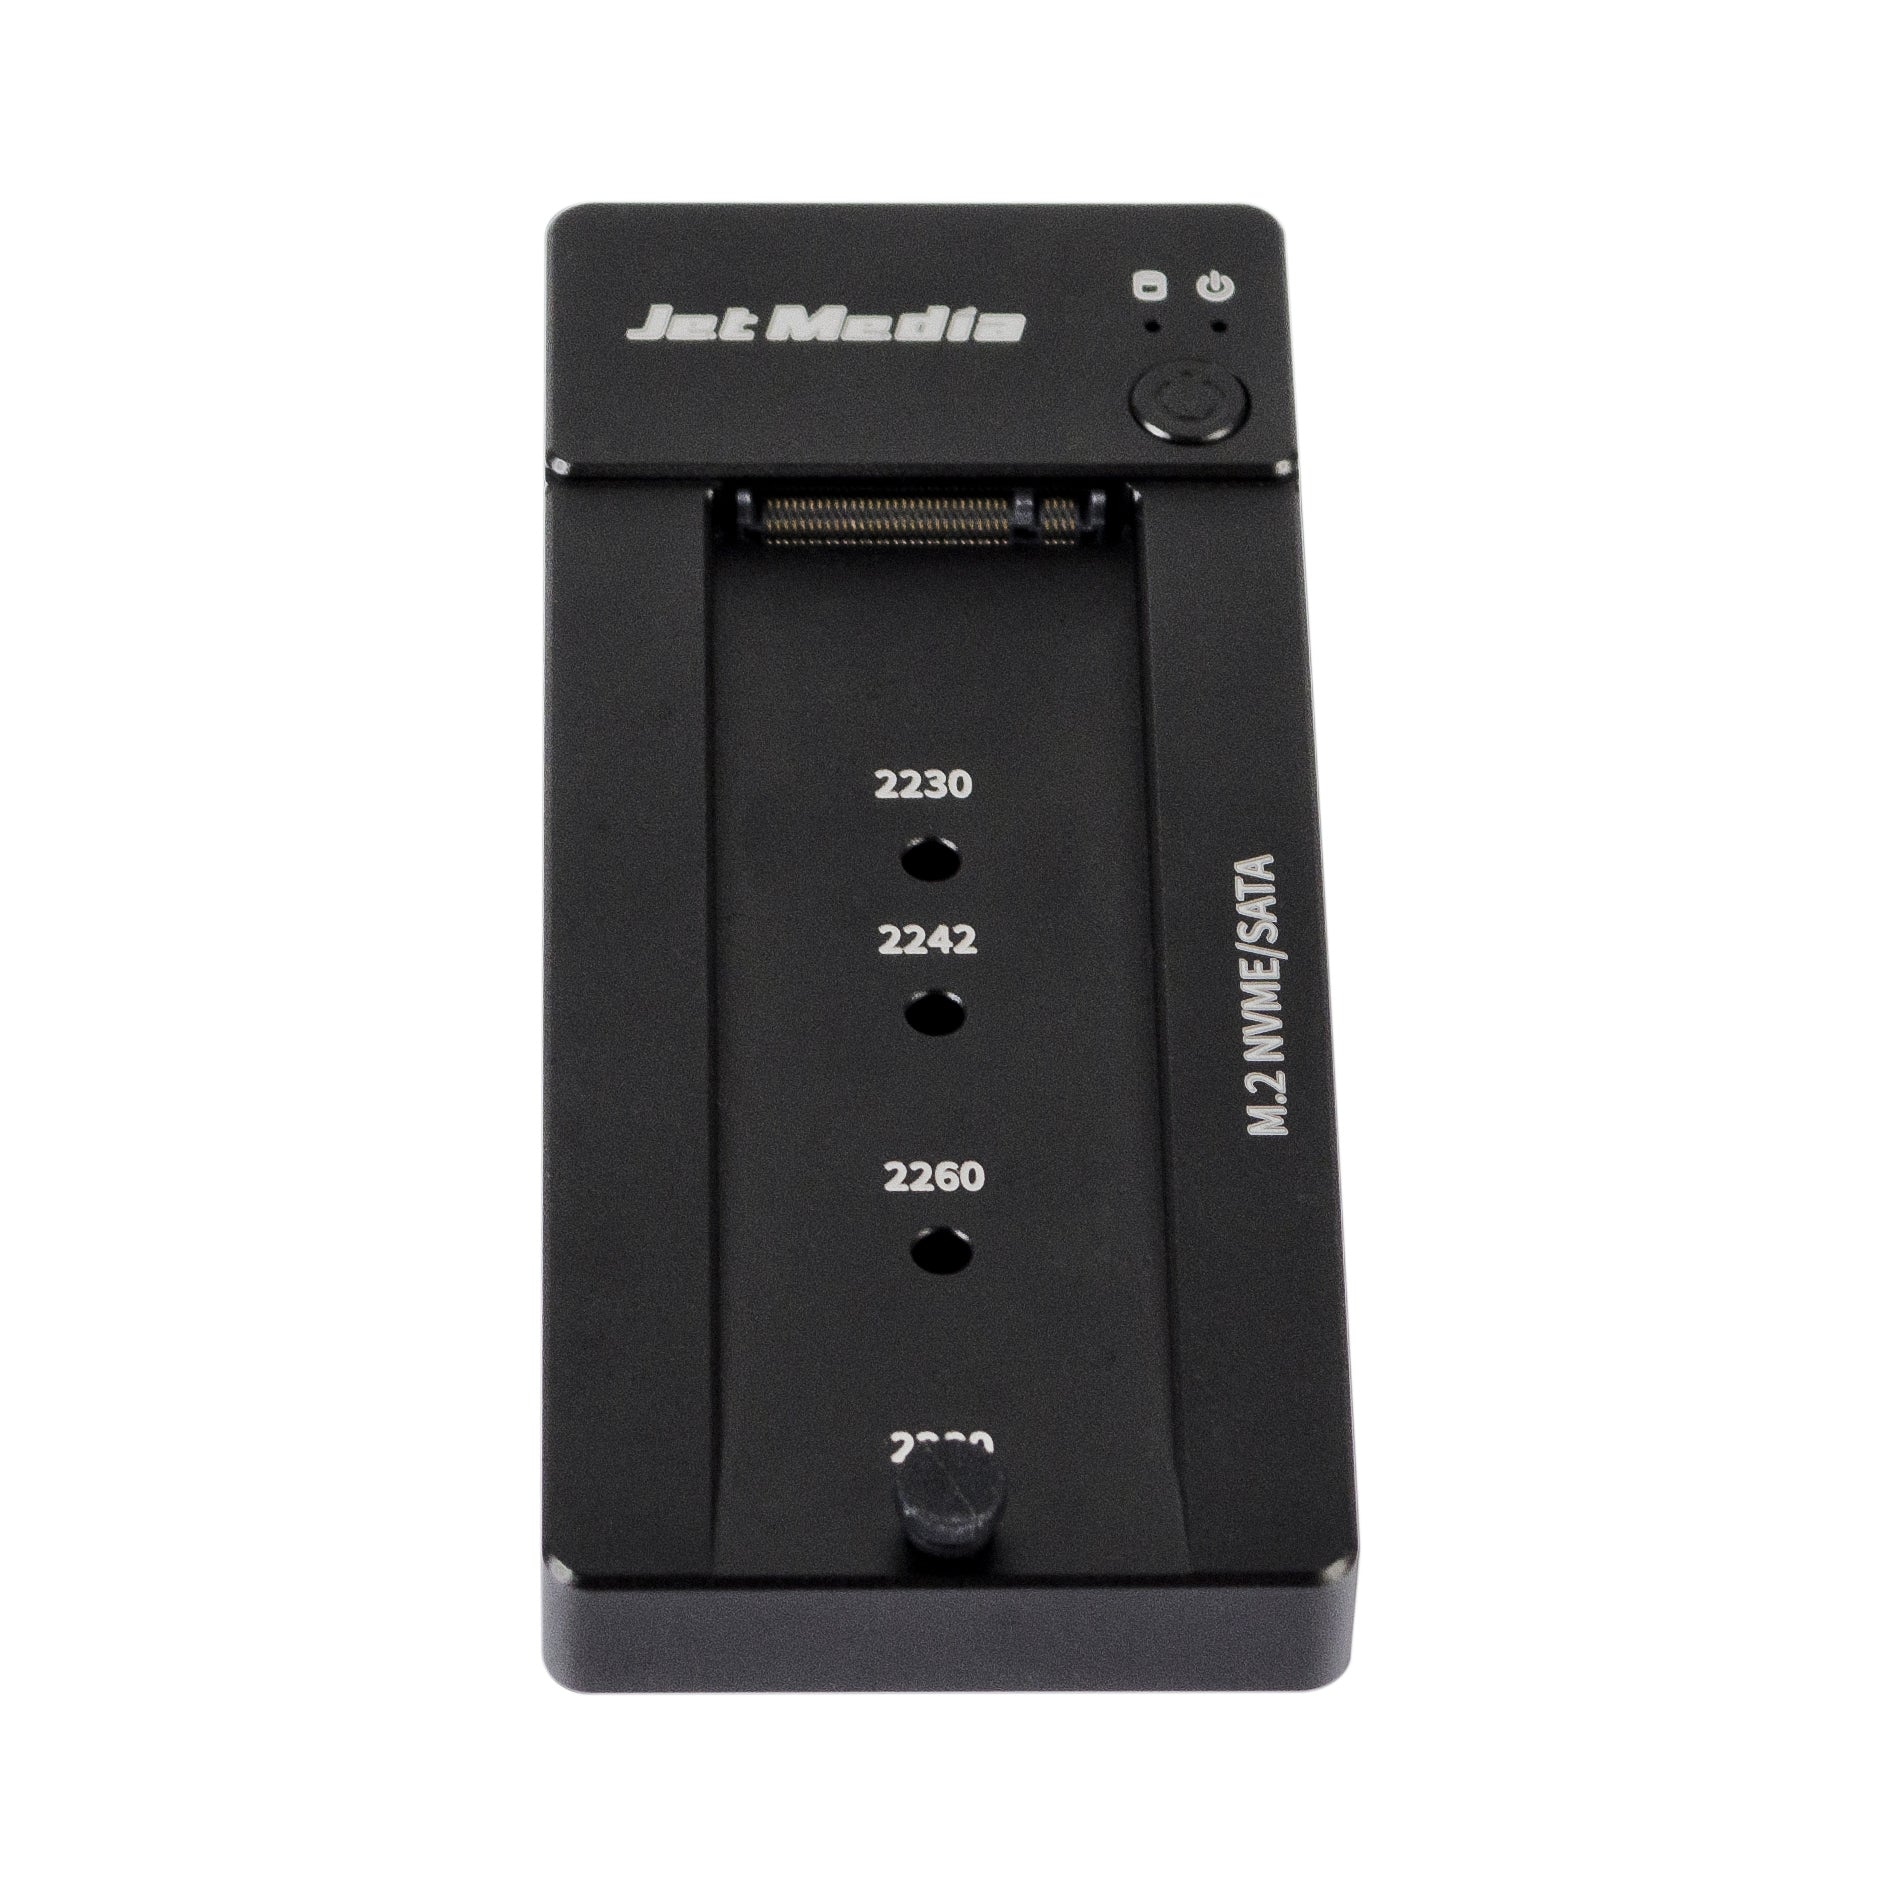 JetMedia JM-D1は、M.2 NVMe/SATAハードディスクドッキングステーションです。カラーはブラックです